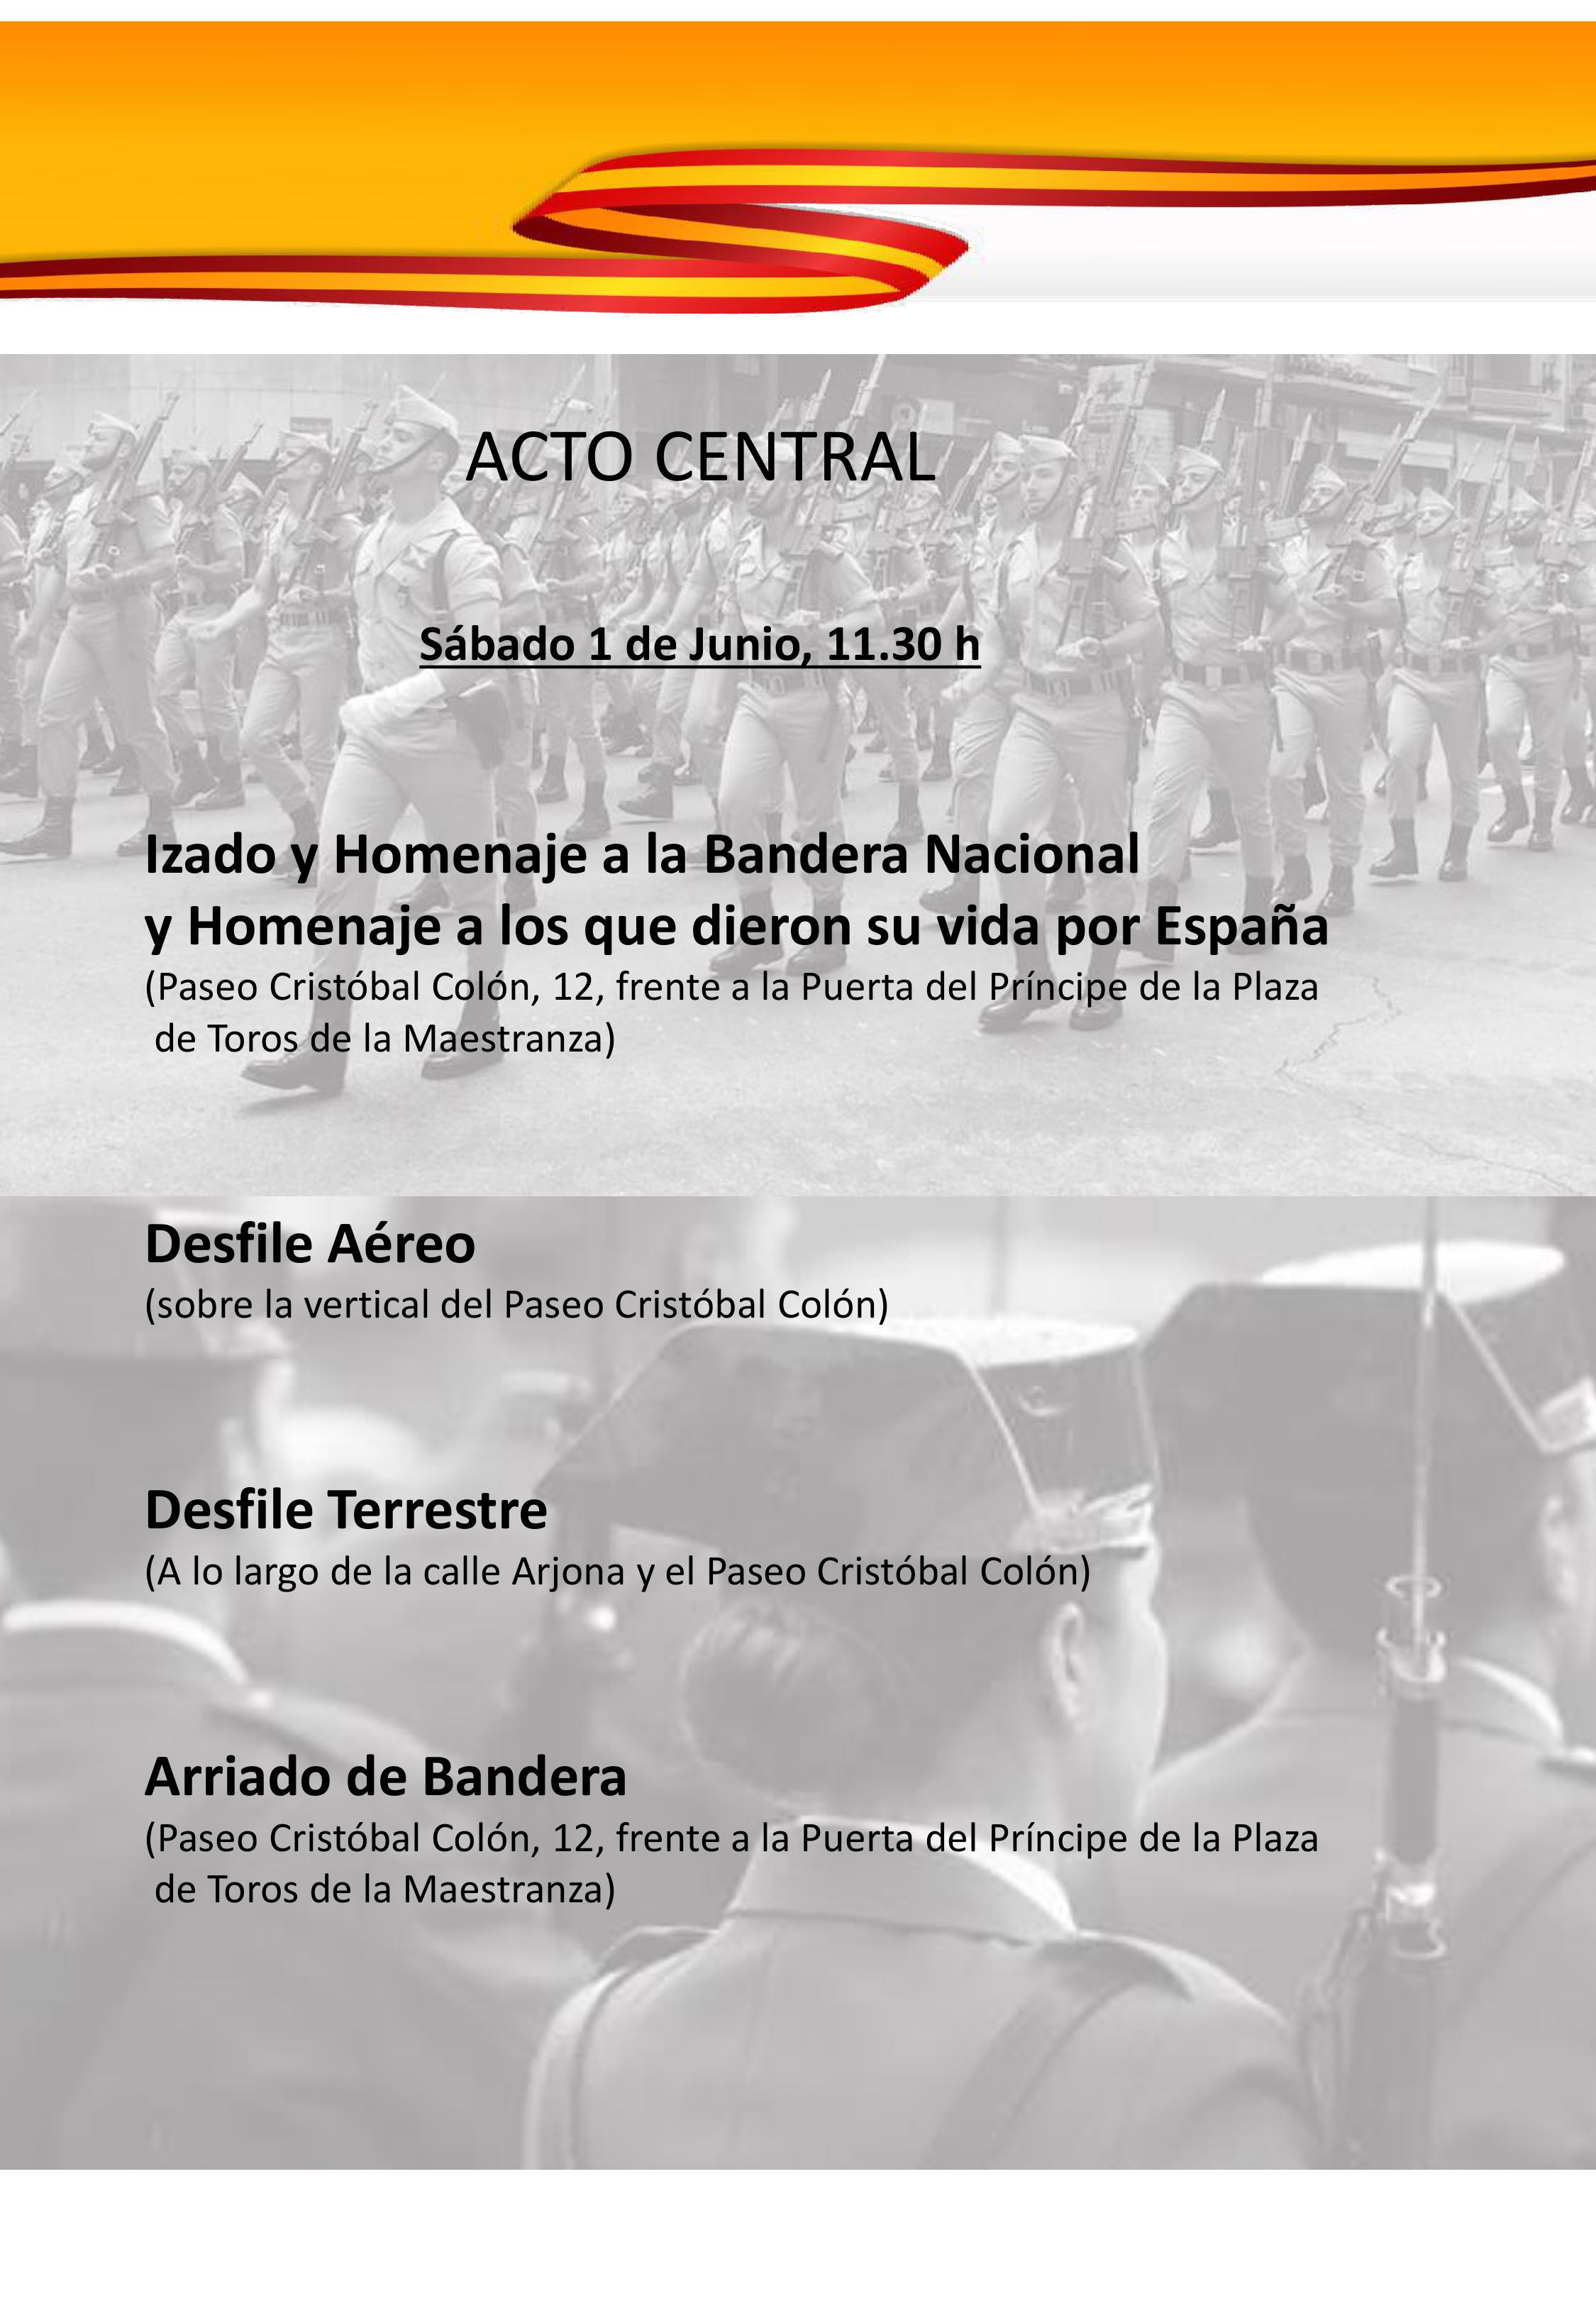 Día de las Fuerzas Armadas 2019 Sevilla.